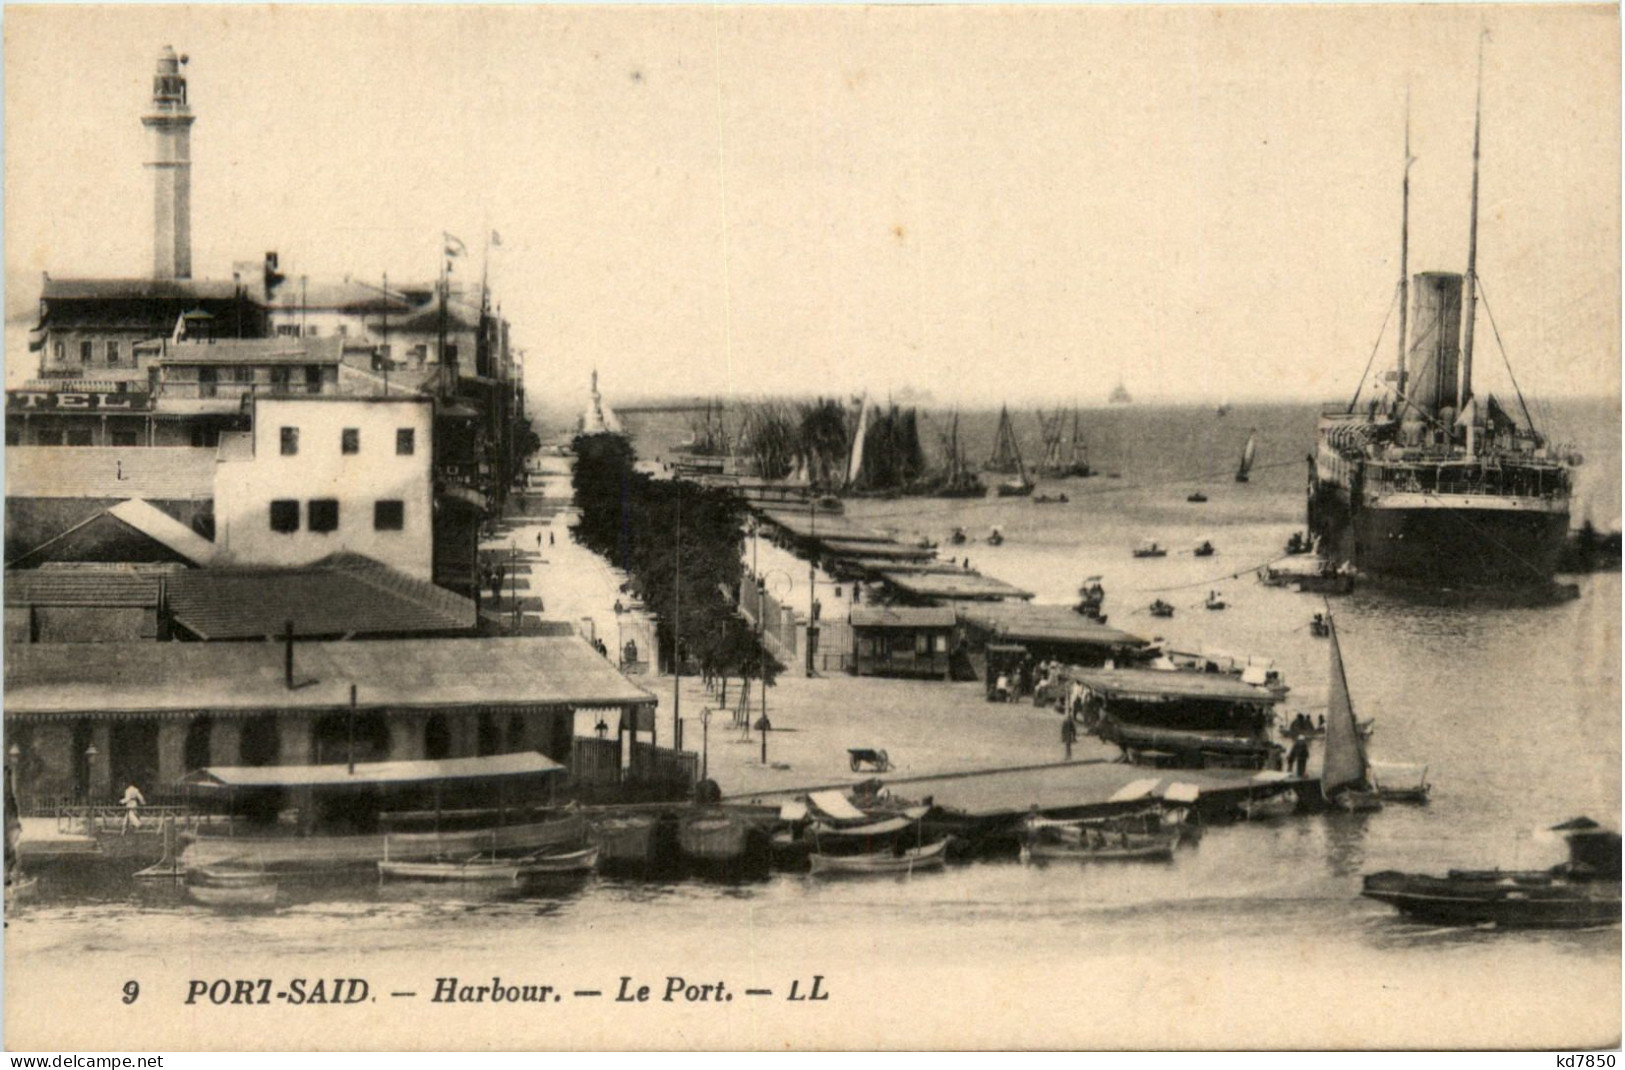 Port Said - Harbour - Port-Saïd